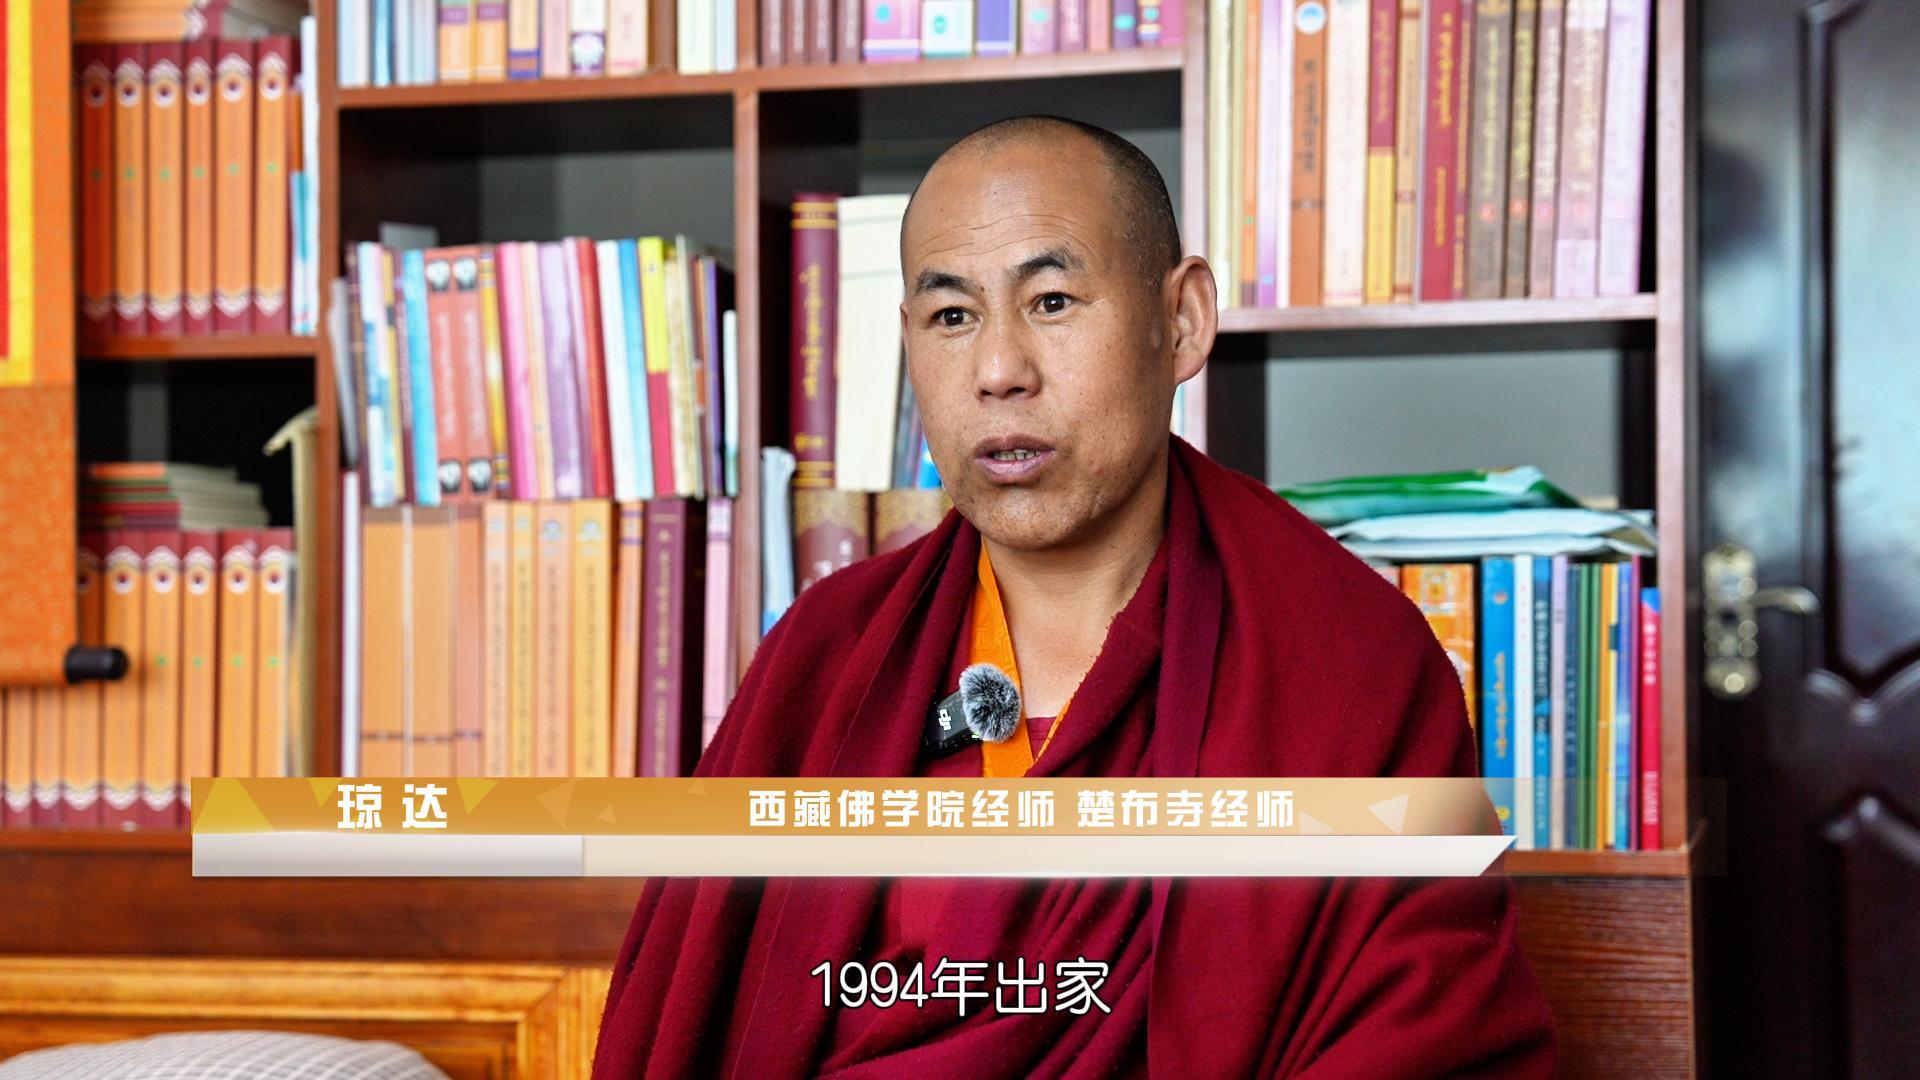 佛学院让藏传佛教僧人们变得博学多才